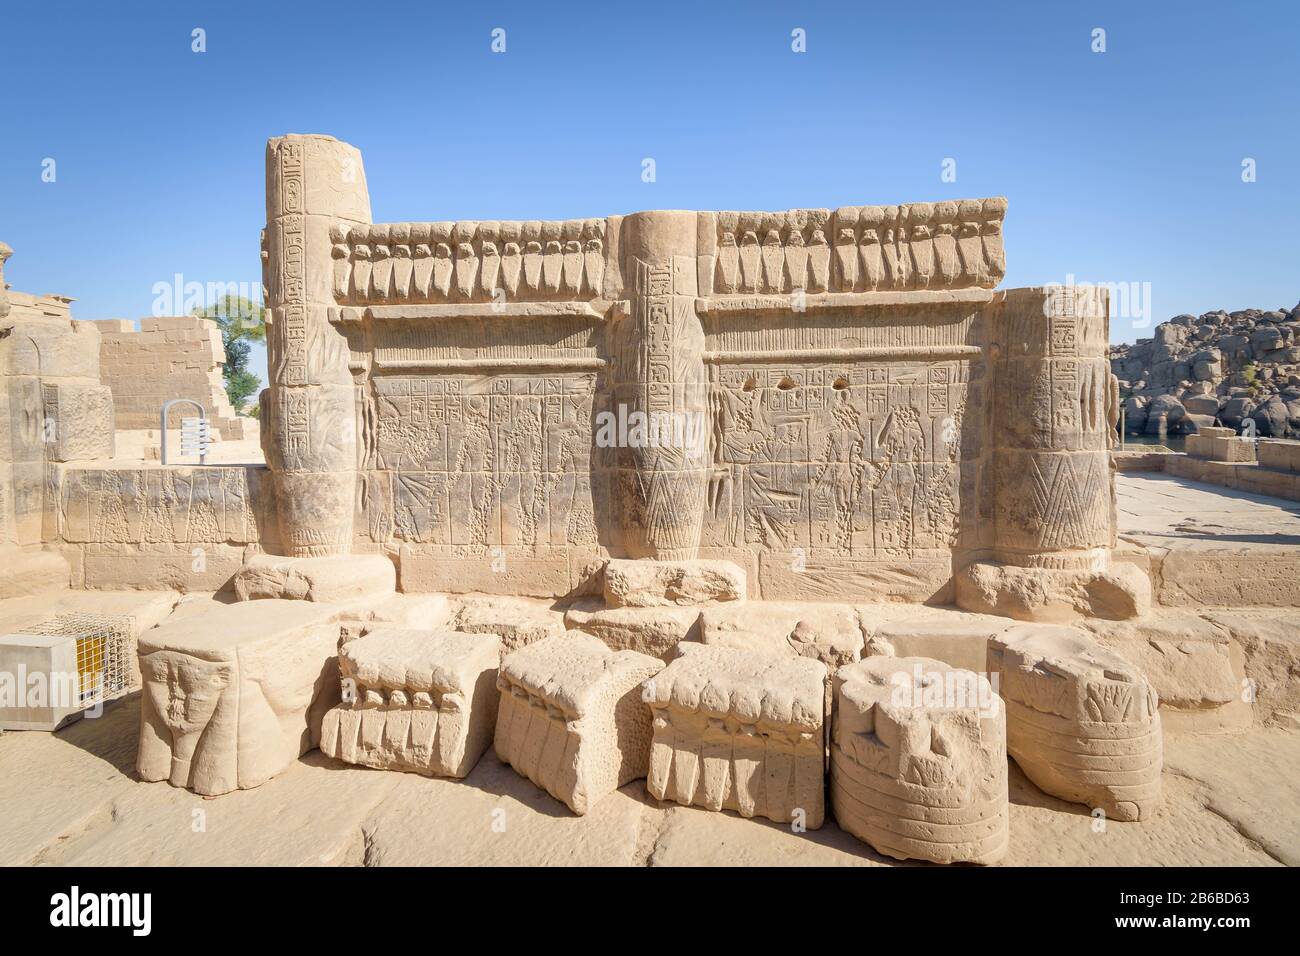 Ein Teil einer Mauer in einem Tempel in Ägypten Stockfoto